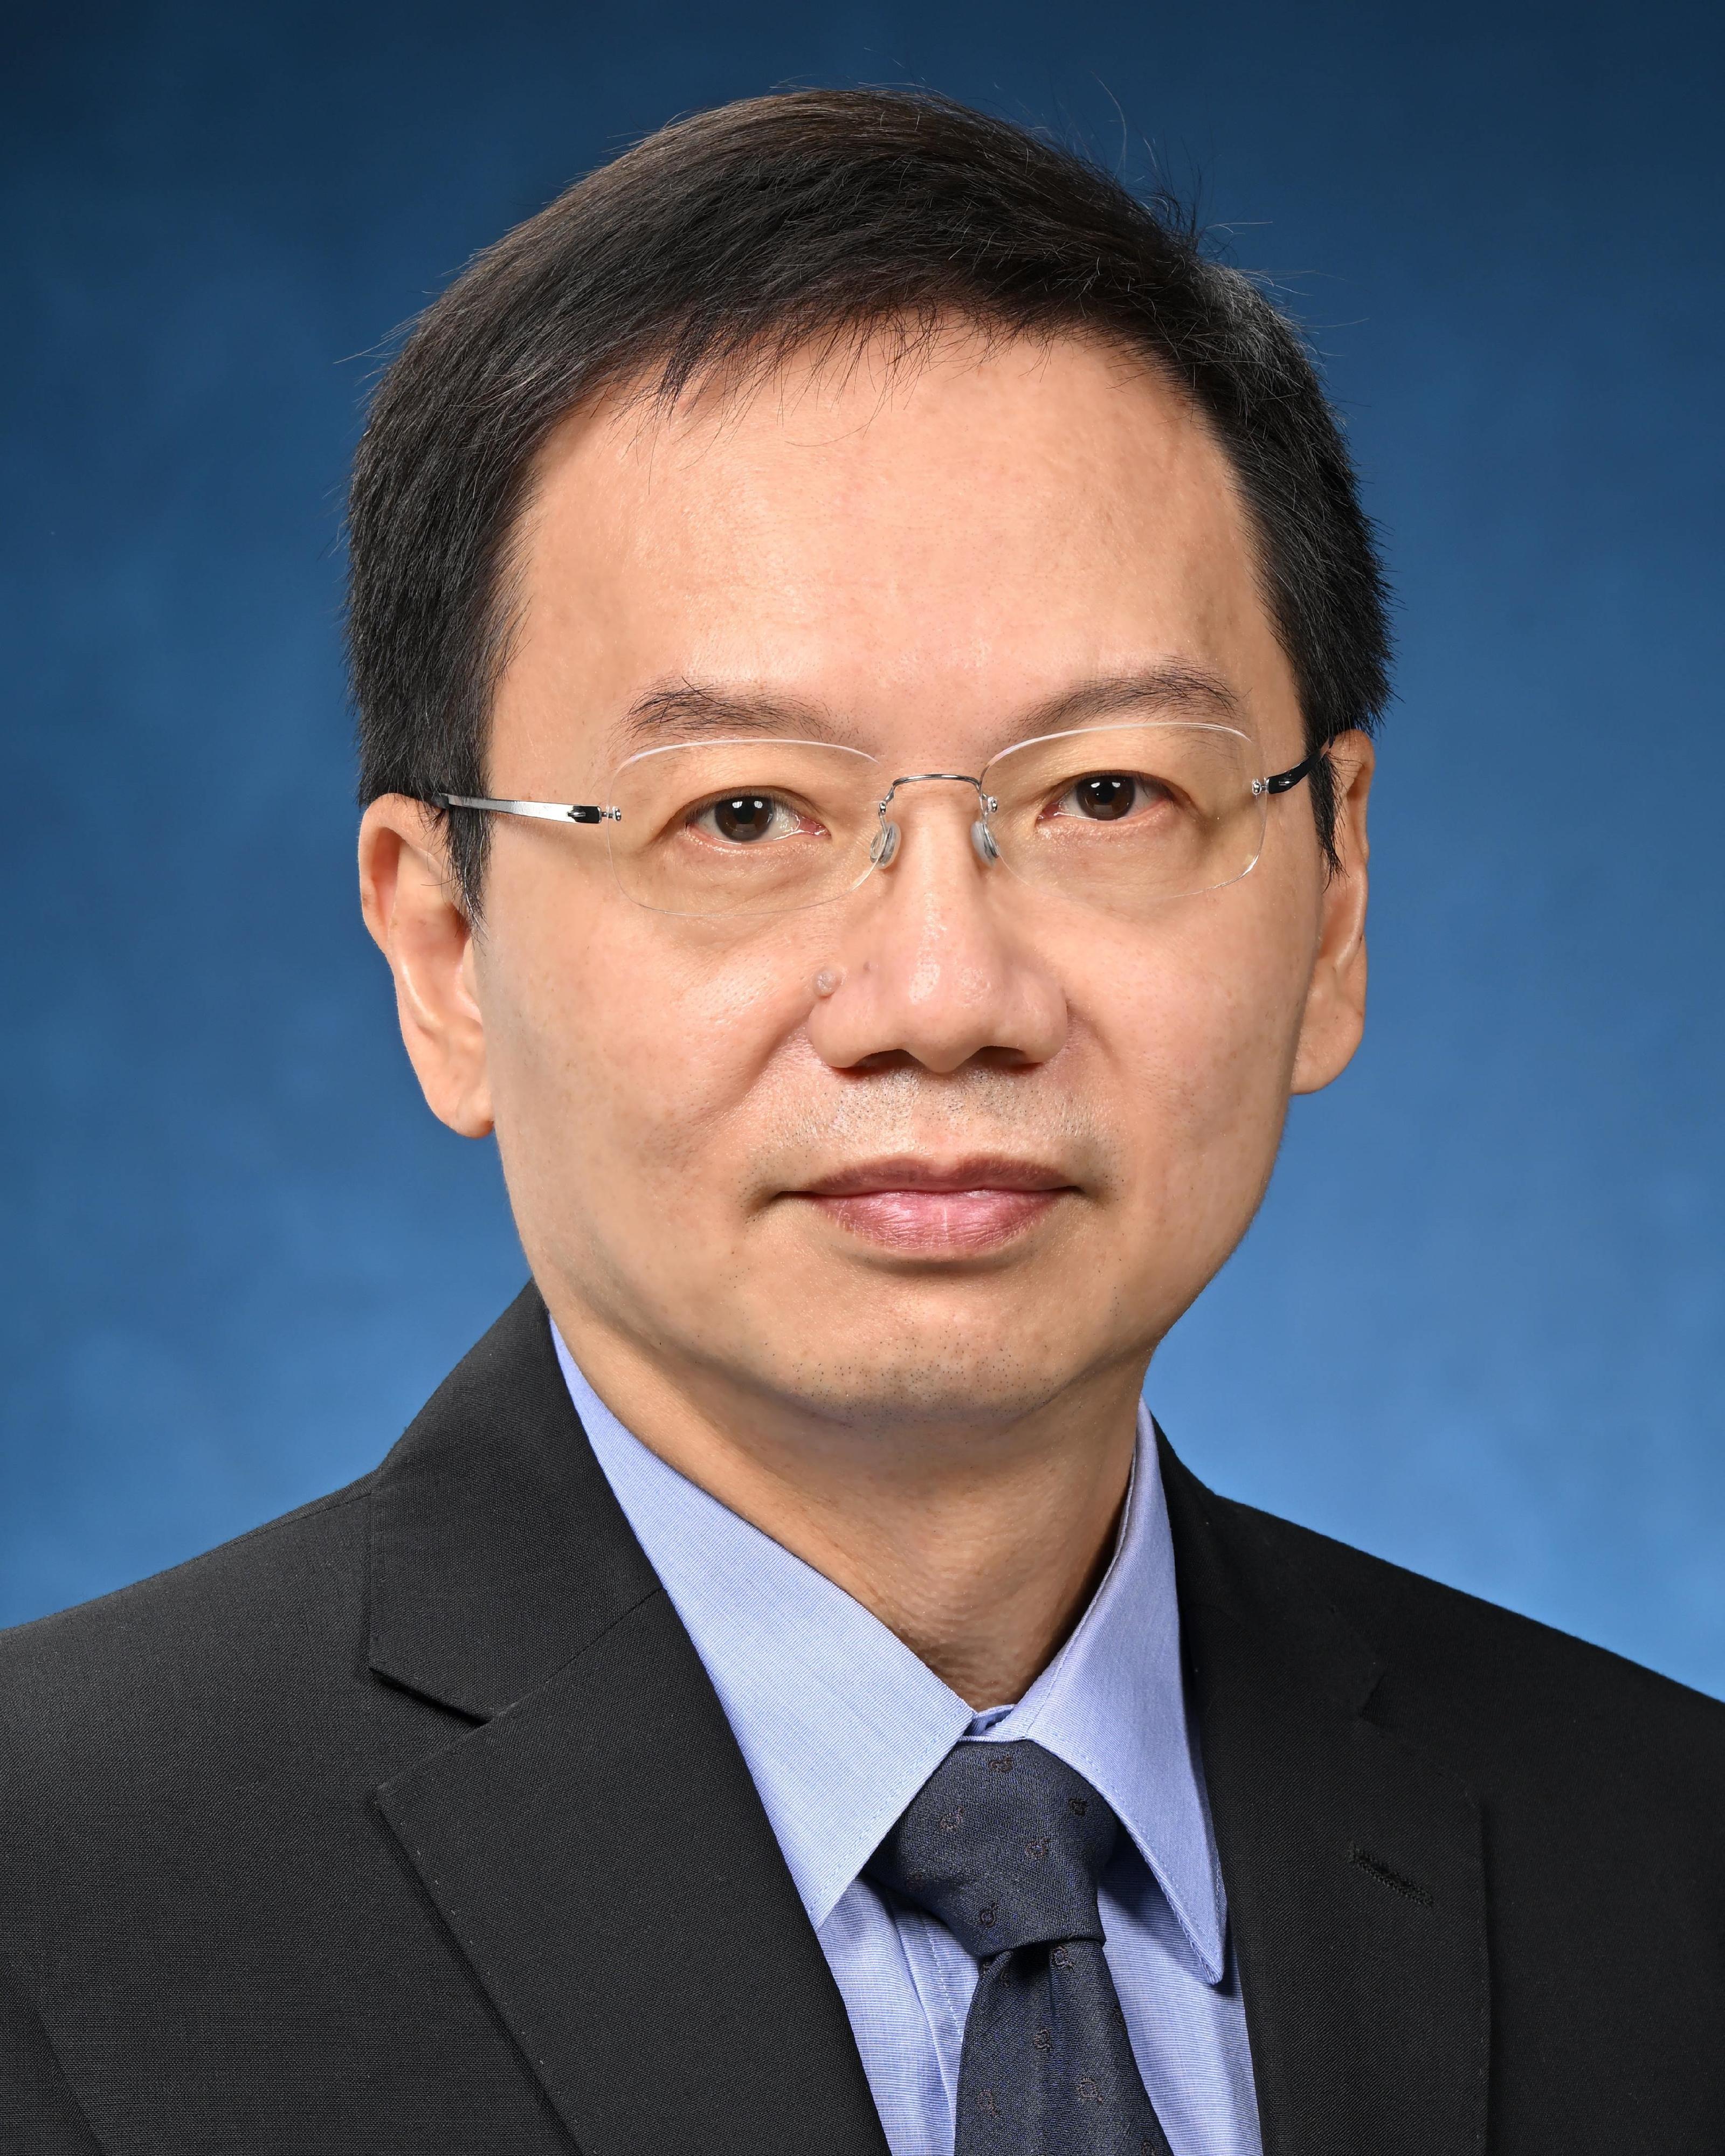 助理政府化驗師李偉安博士將於二○二二年五月十六日出任政府化驗師。

